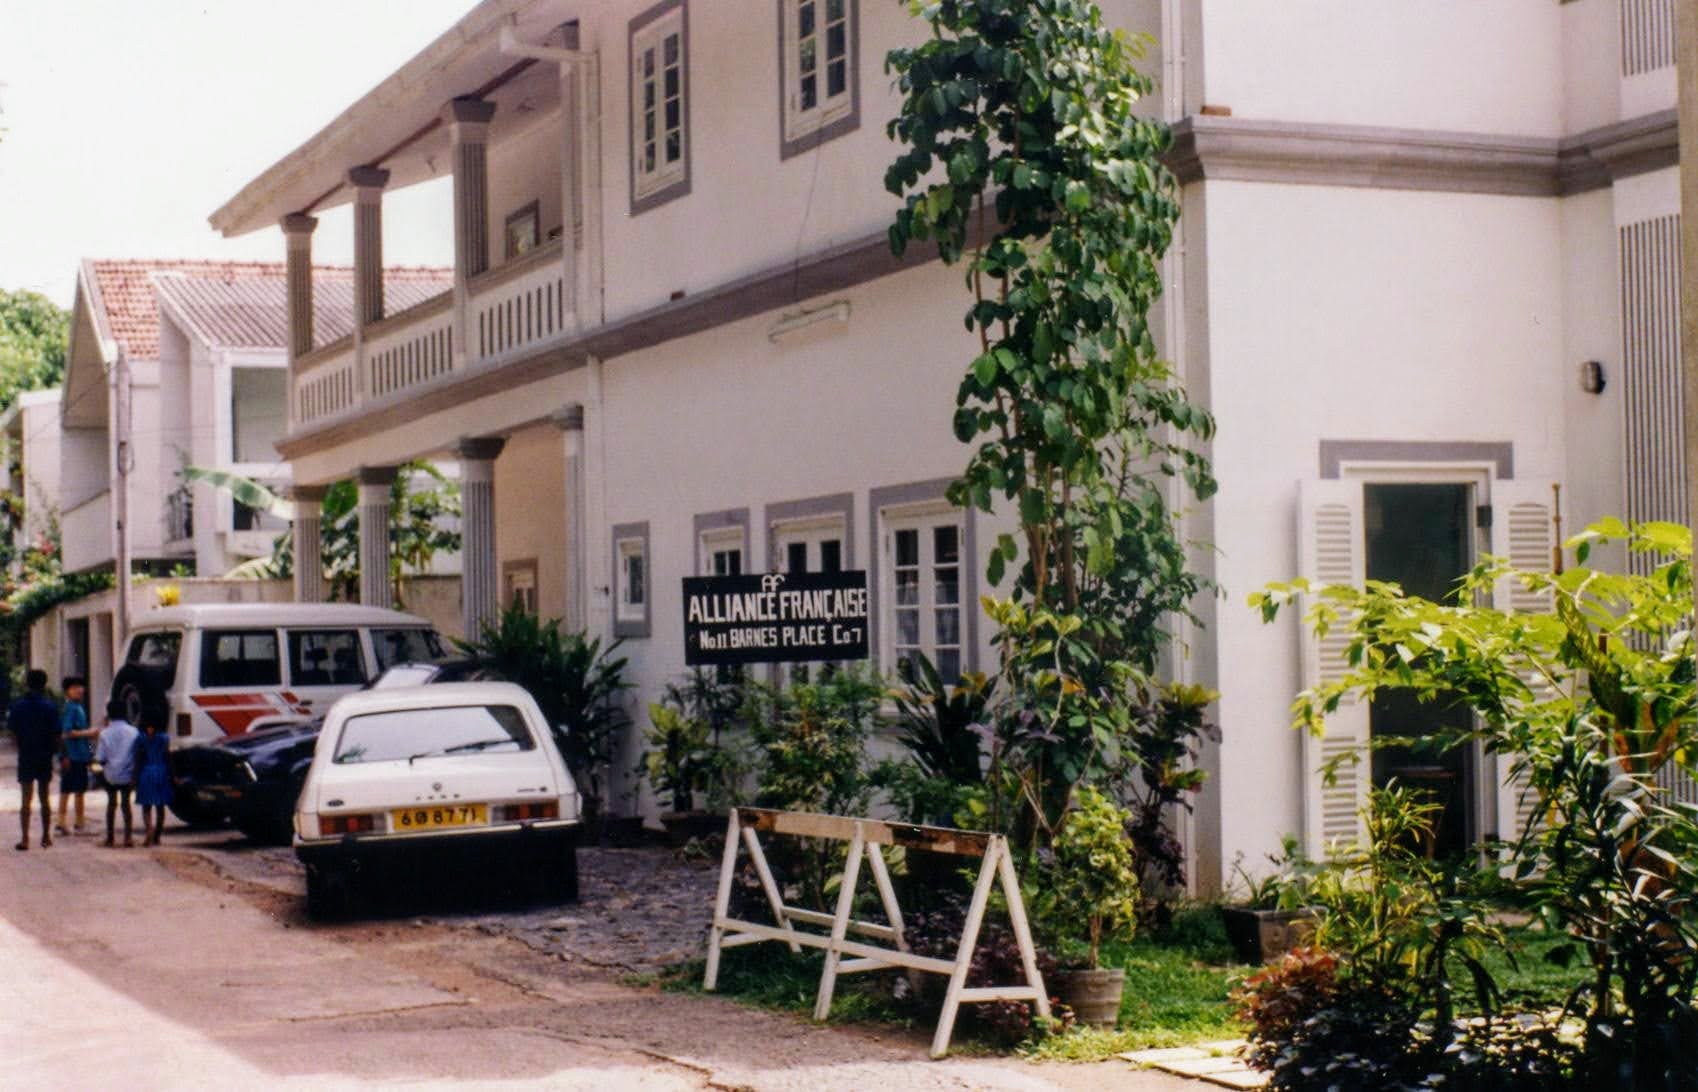 Barnes Place 1988